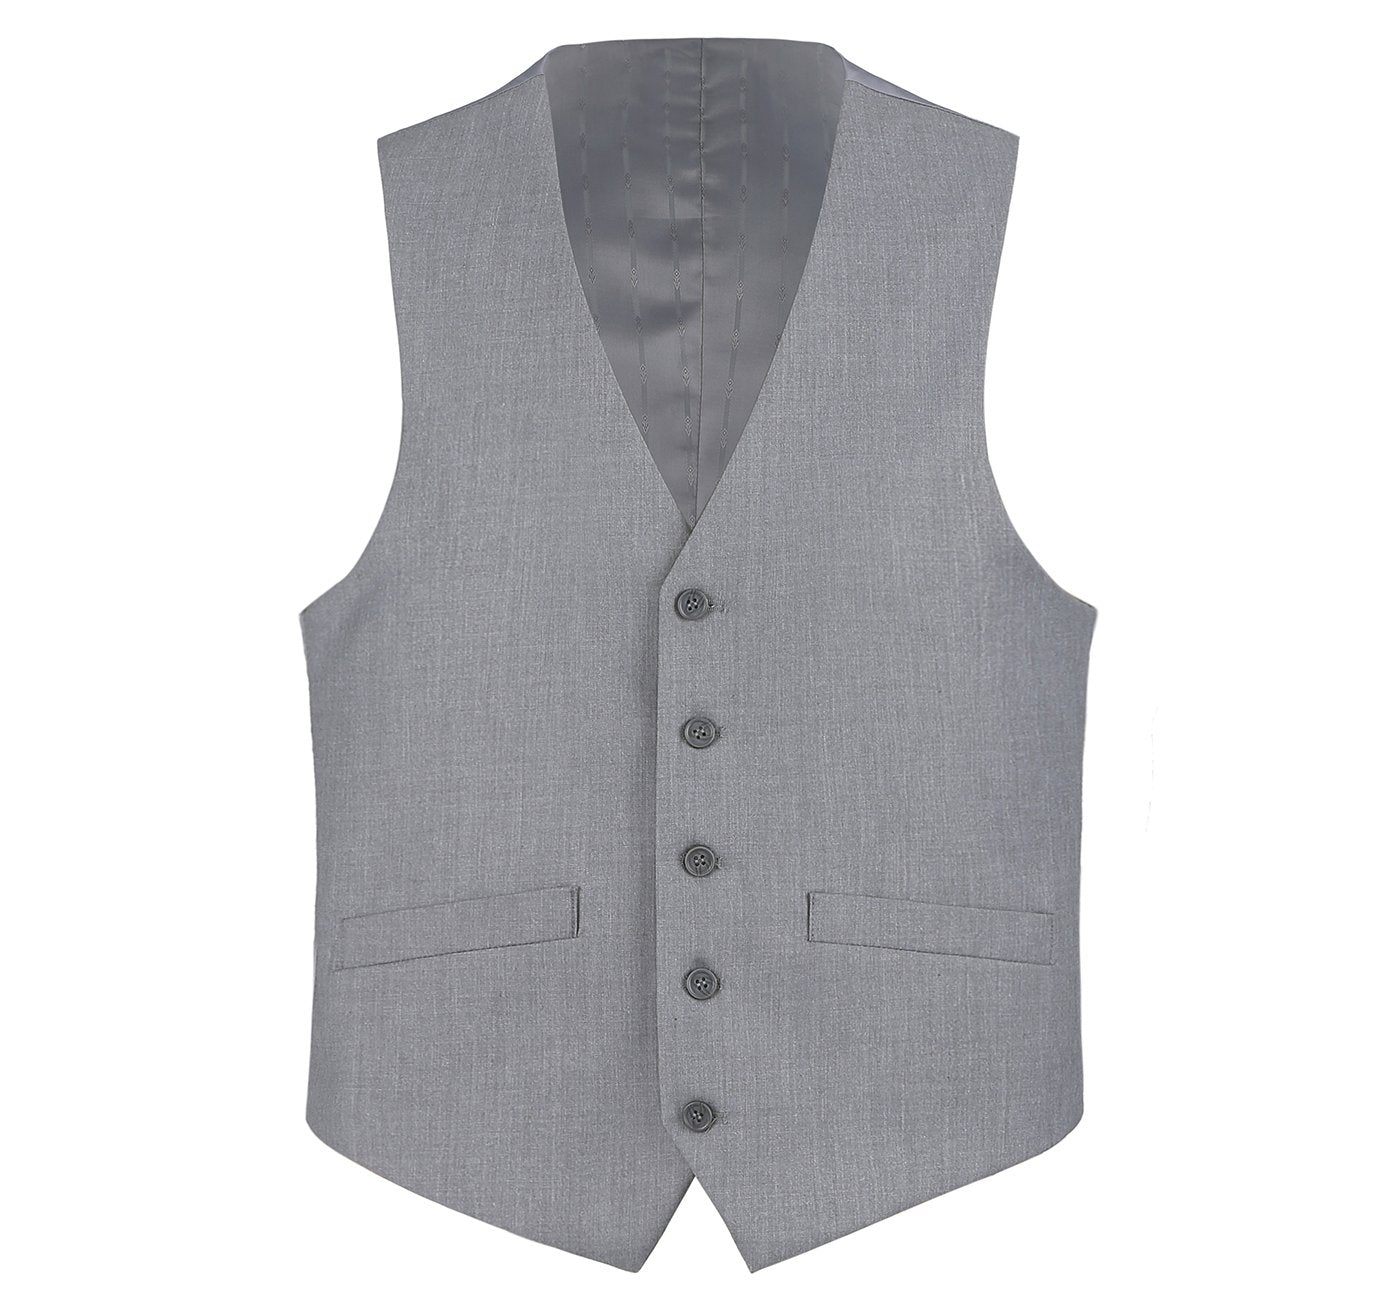 202-2 Men's Light Grey Classic Fit Suit Separate Vest